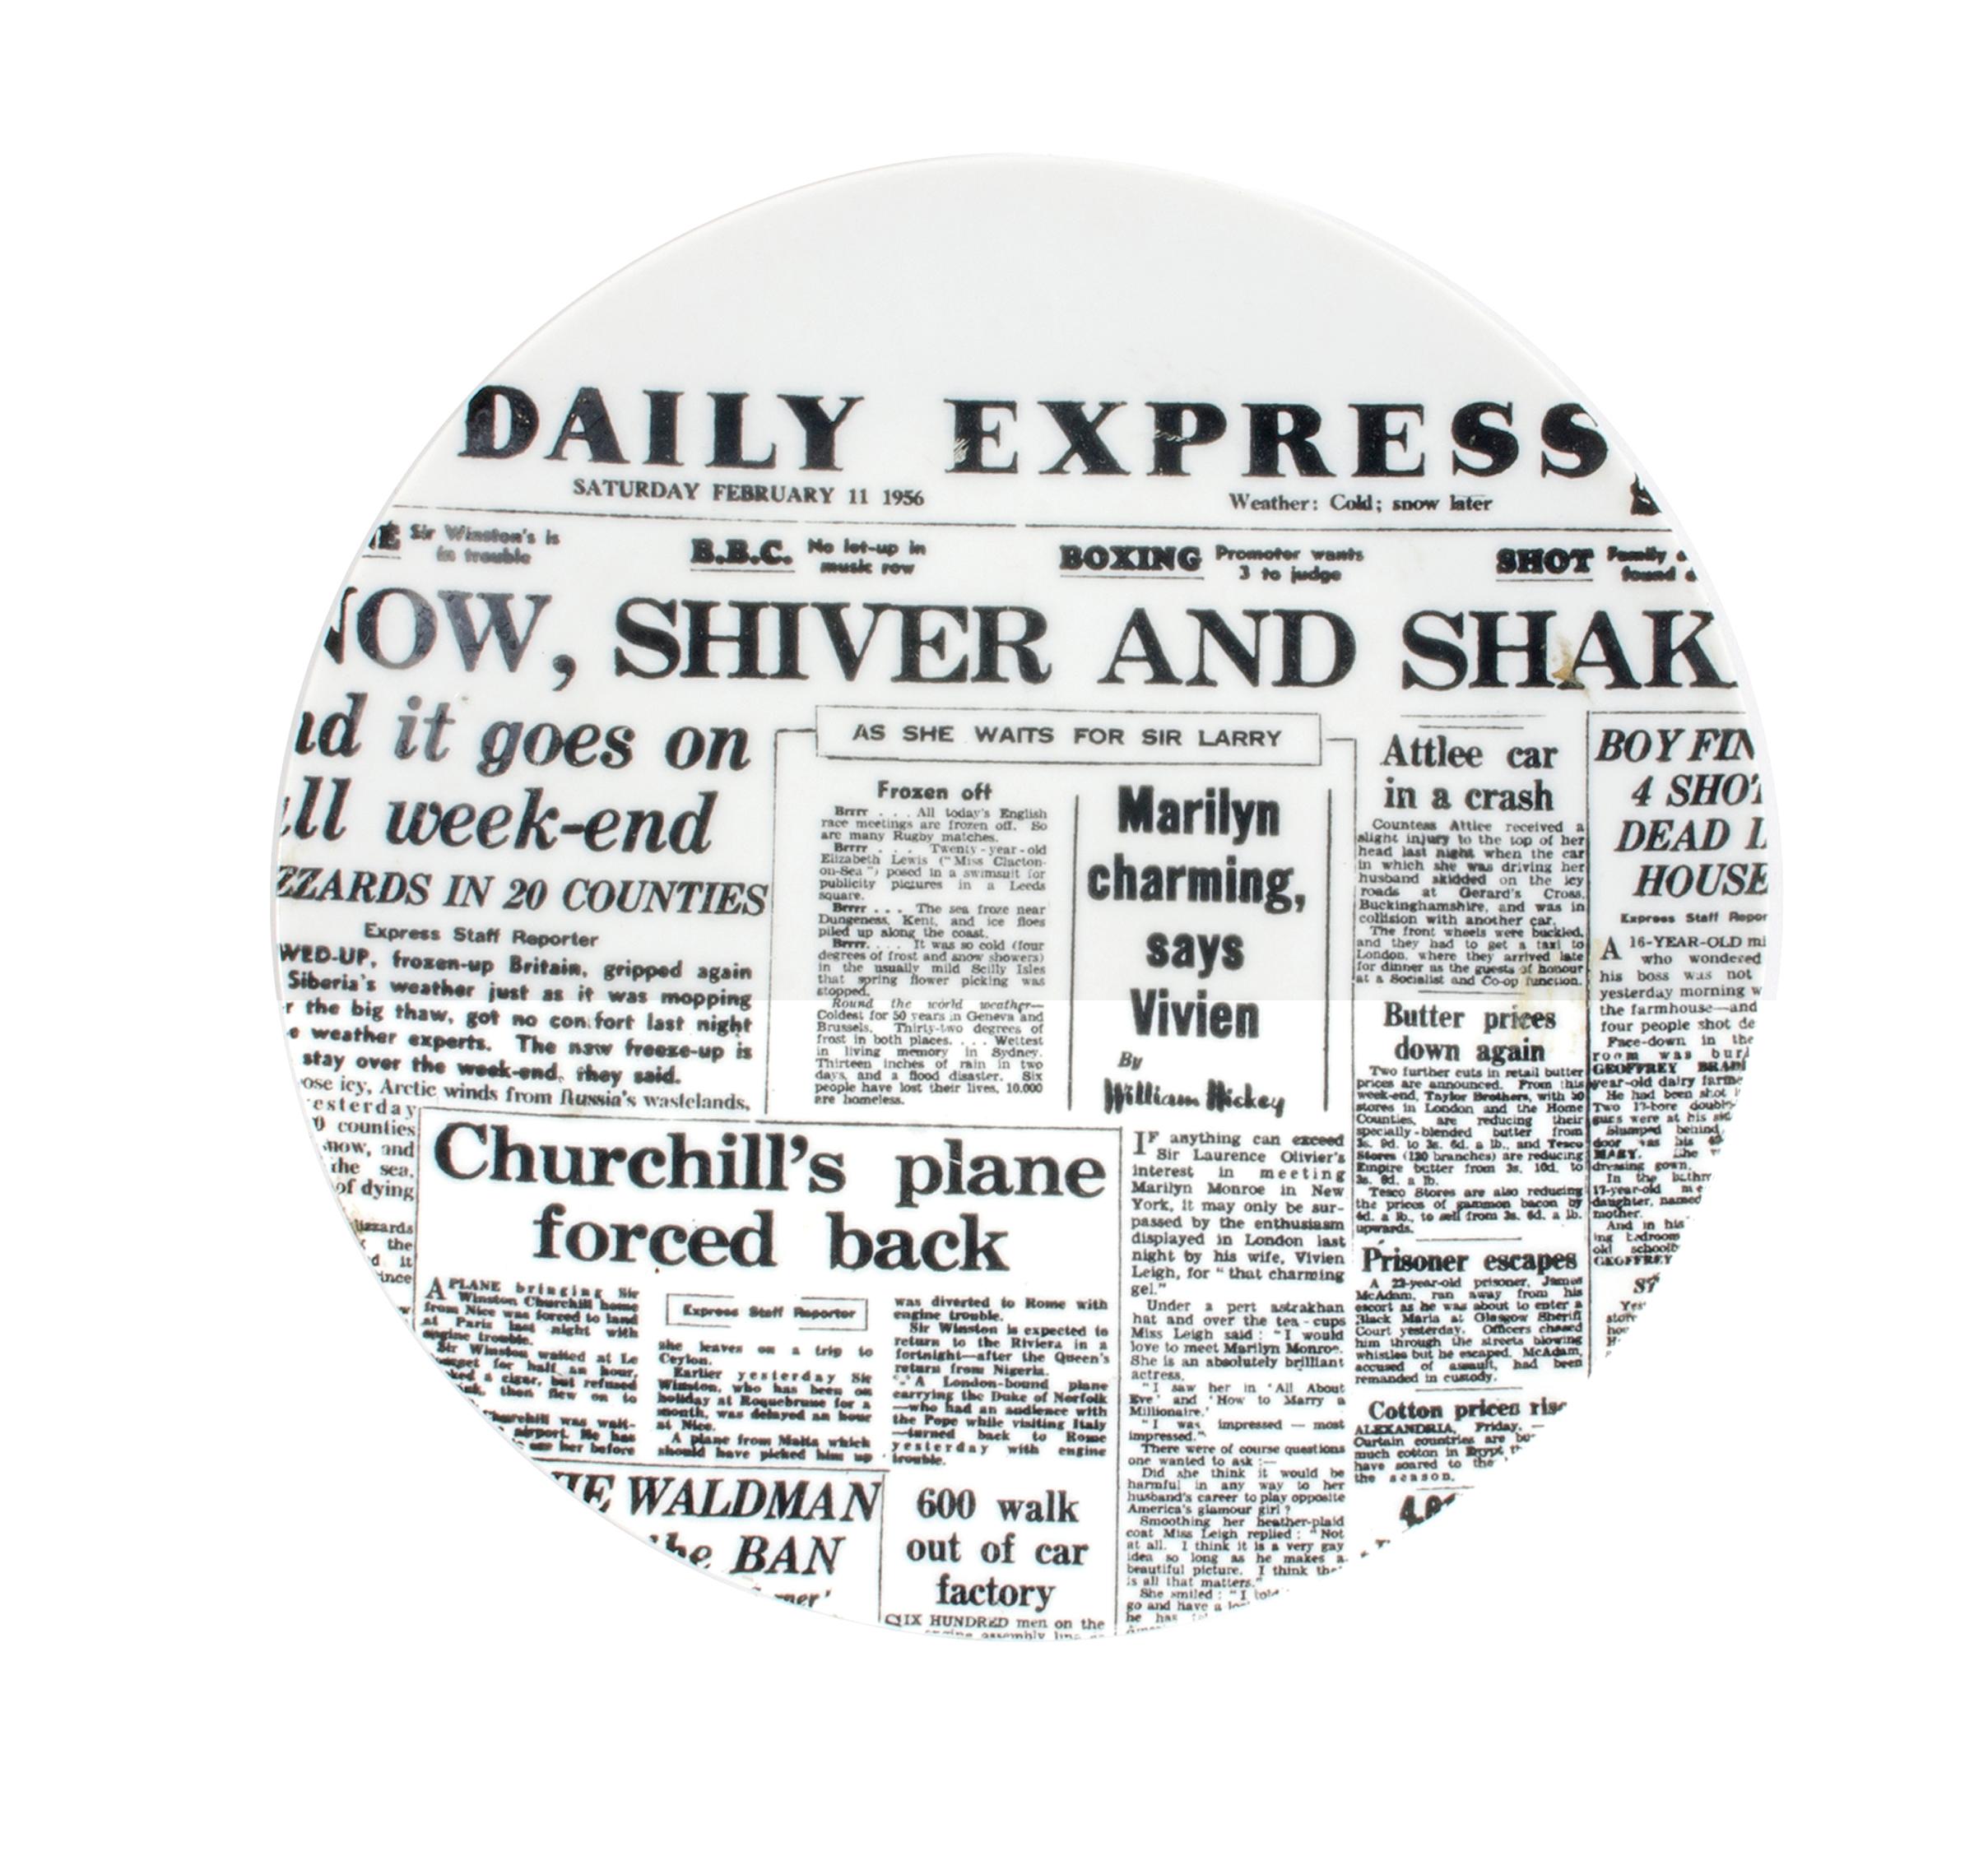 Assiette à journaux en porcelaine de Piero Fornasetti,
Daily Express,
Giornali (Journaux)
Fin des années 1950.
(NY8534B)

L'assiette en porcelaine de Piero Fornasetti représente la première page du Daily Express du samedi 11 février 1956, avec